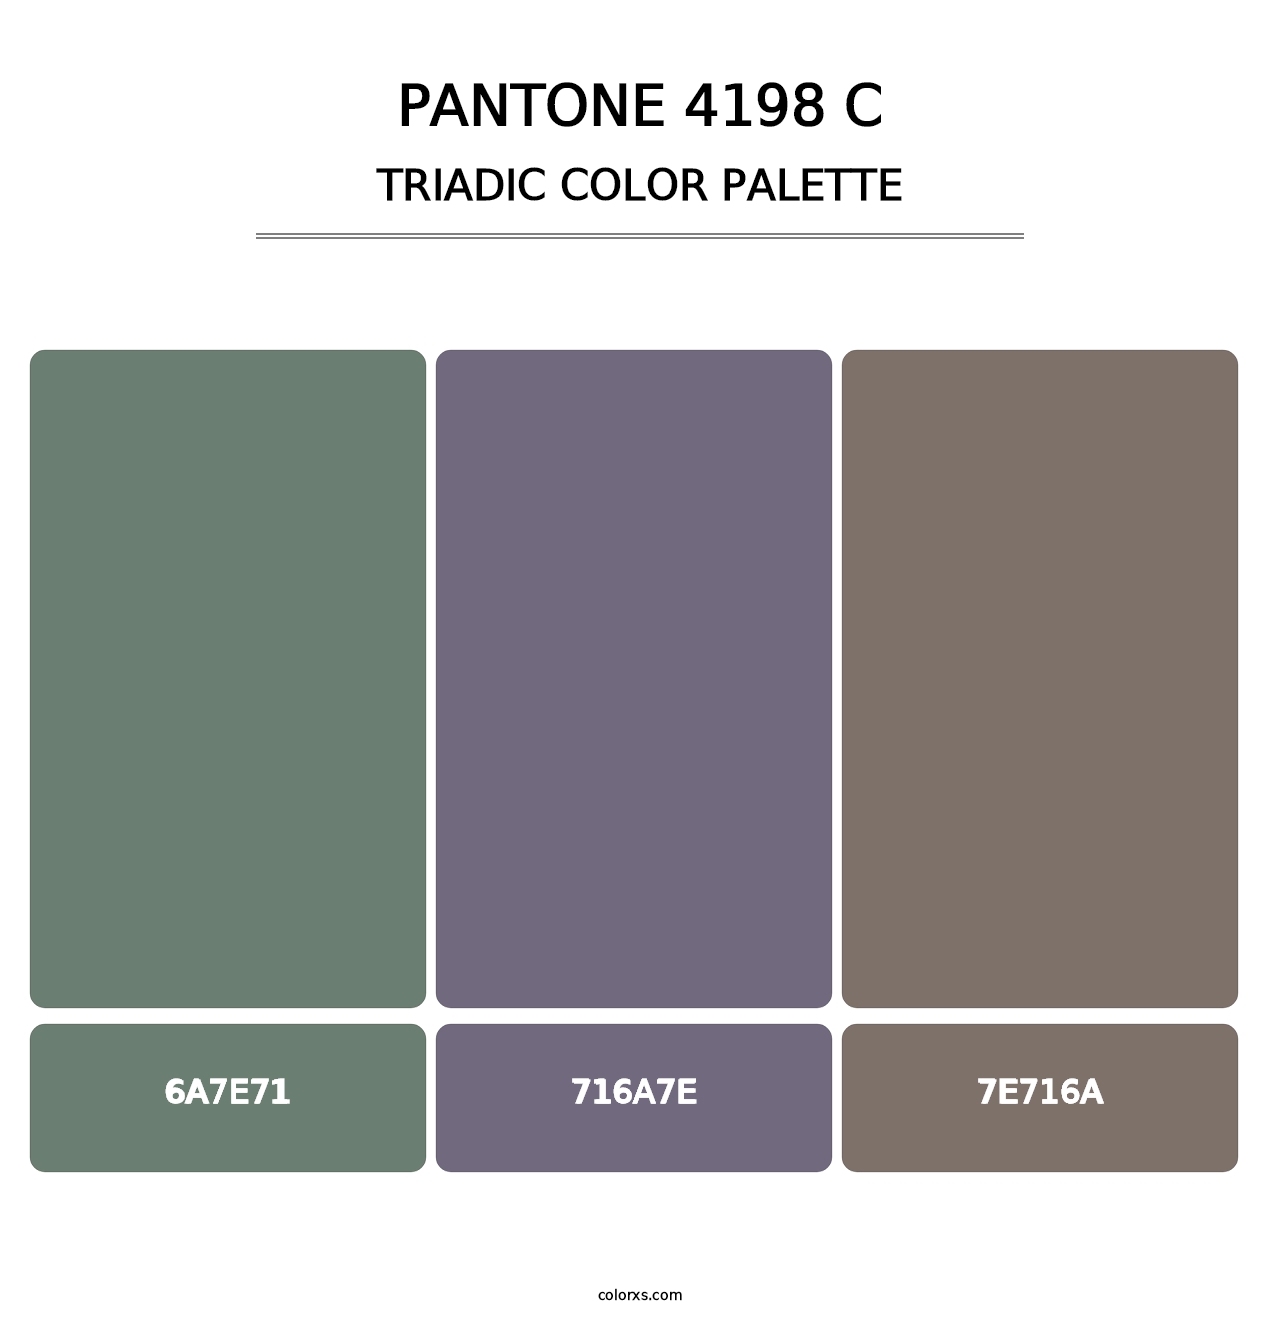 PANTONE 4198 C - Triadic Color Palette